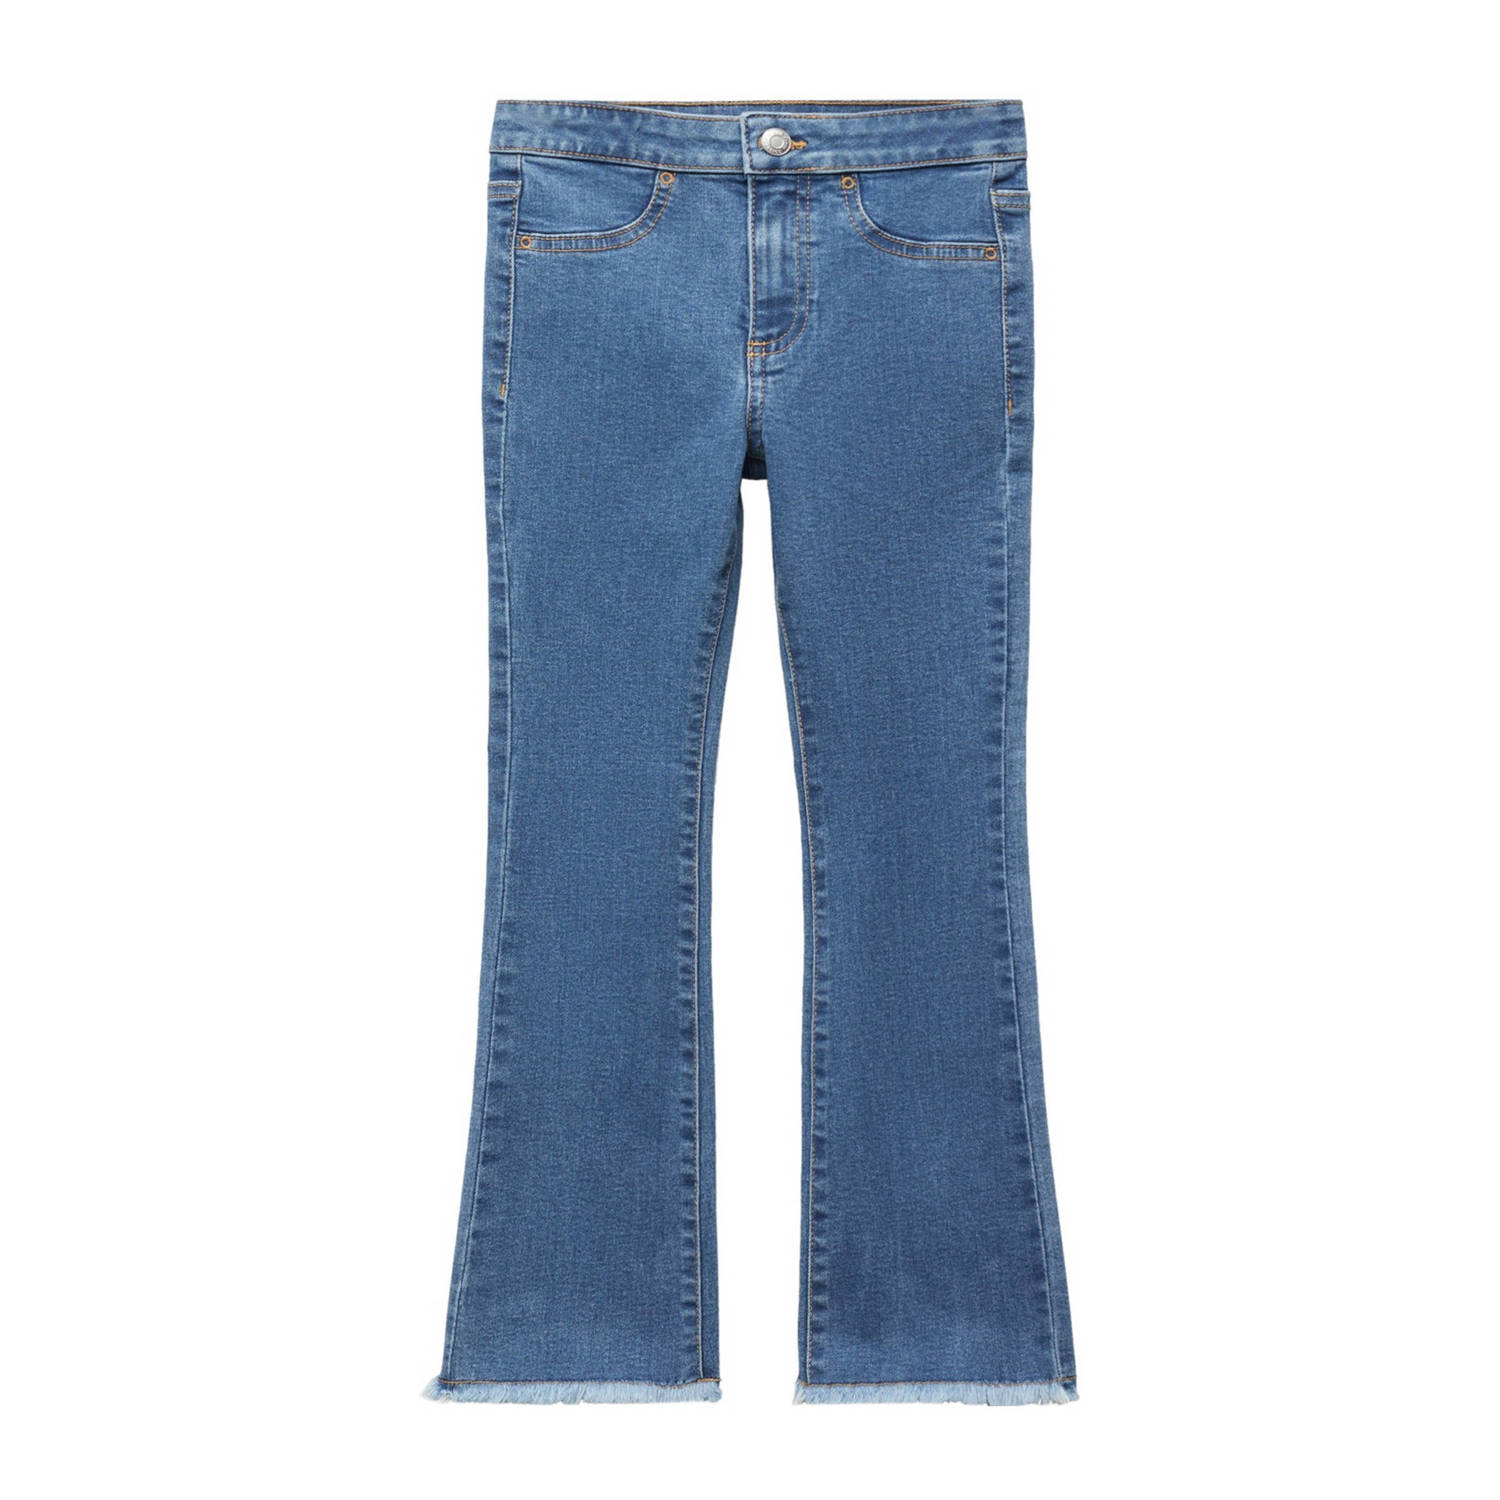 Mango Kids high waist flared jeans medium blue denim Blauw Meisjes Stretchdenim 122